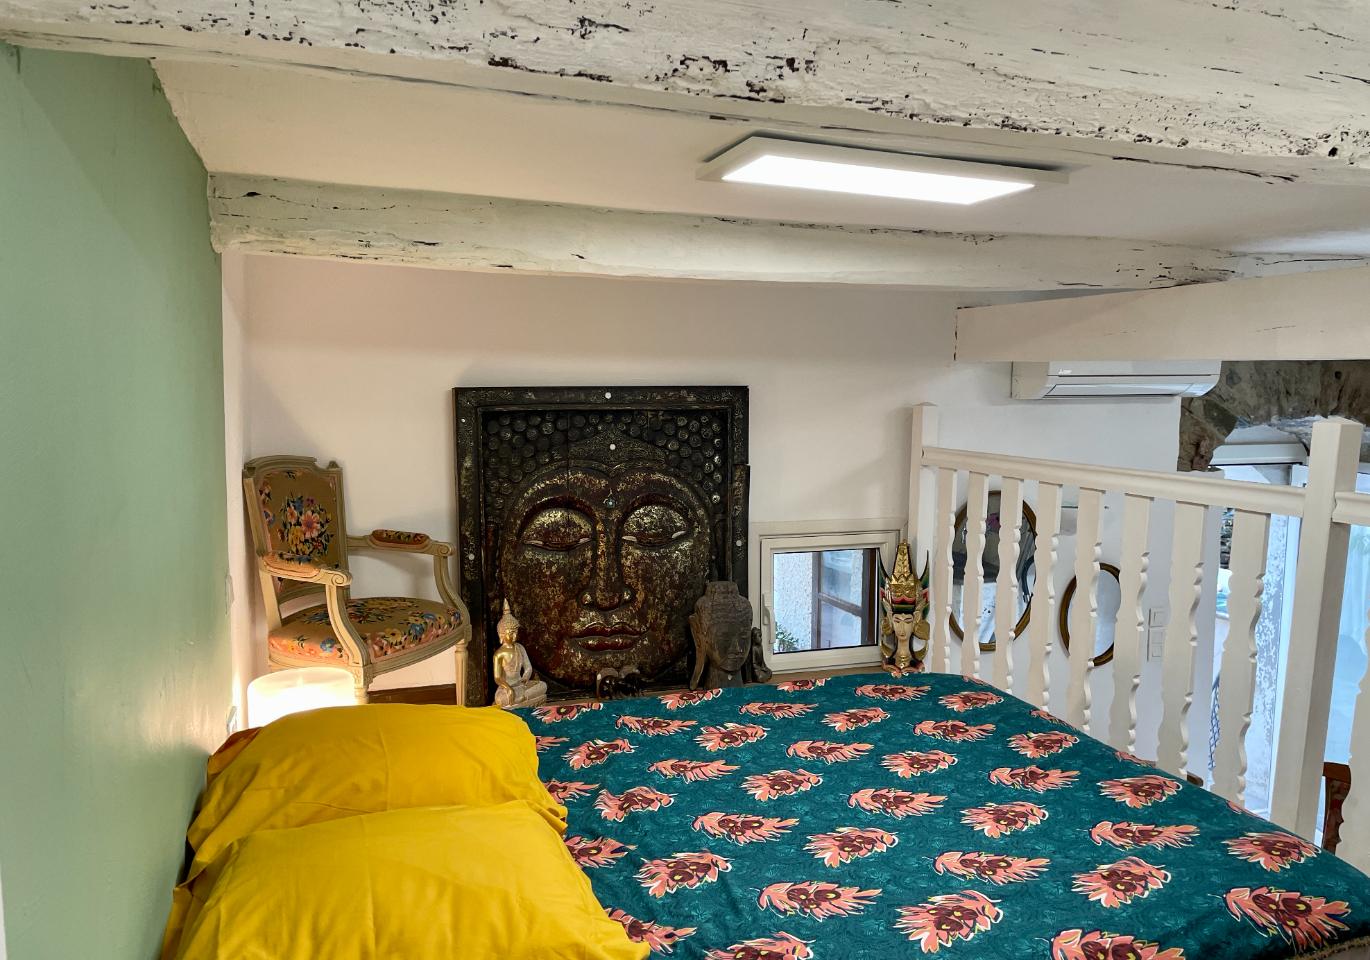 Logement GreenGo: Casa Poli: le tiny loft, hommage au Grand-père, ambiance cocooning et farniente - Image 19